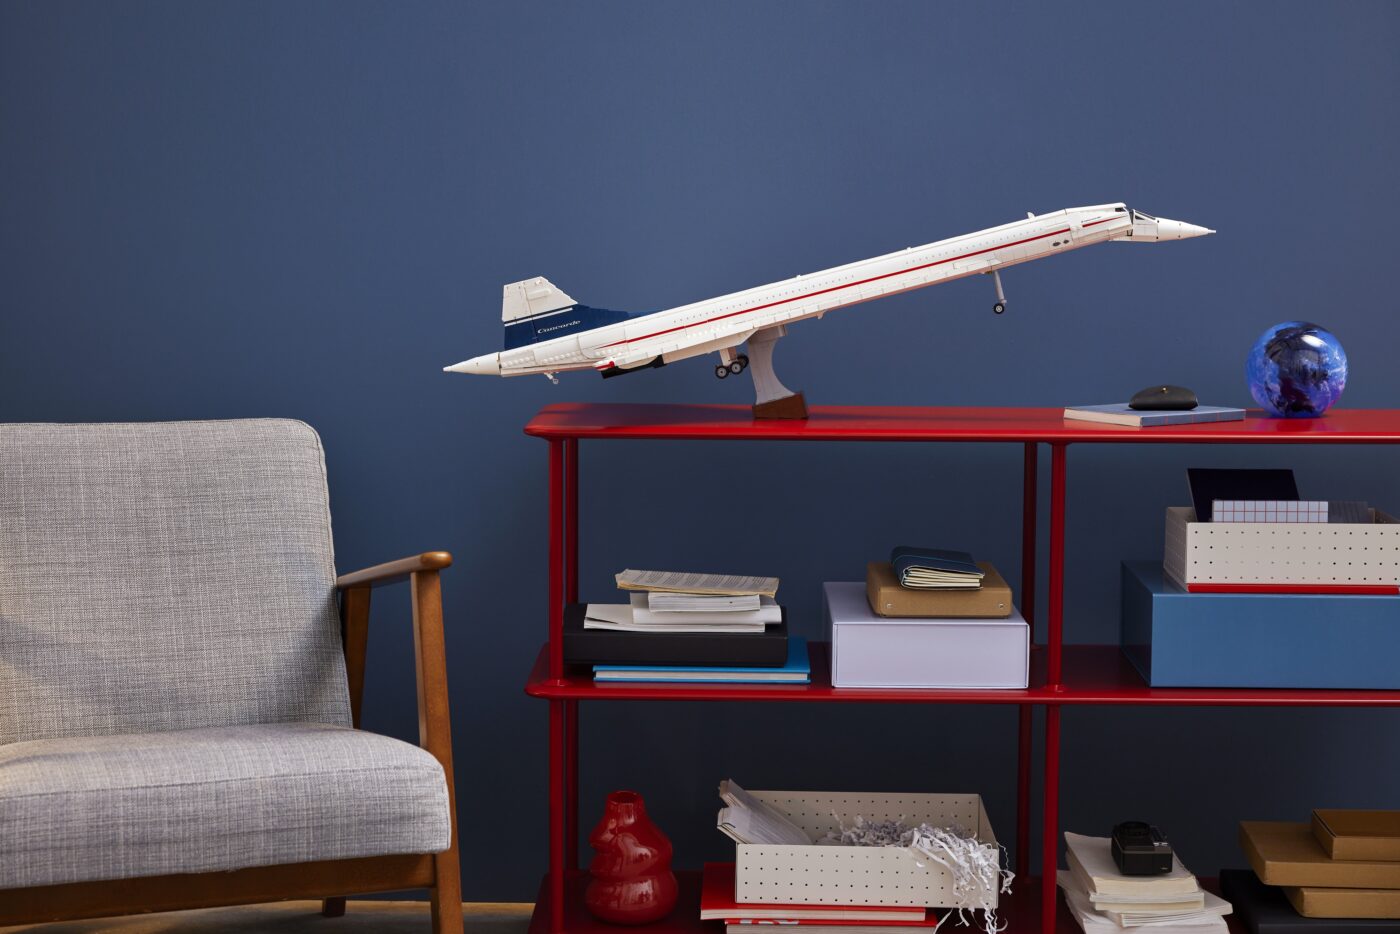 10318 Concorde Lifestyle Display Snoot Droop